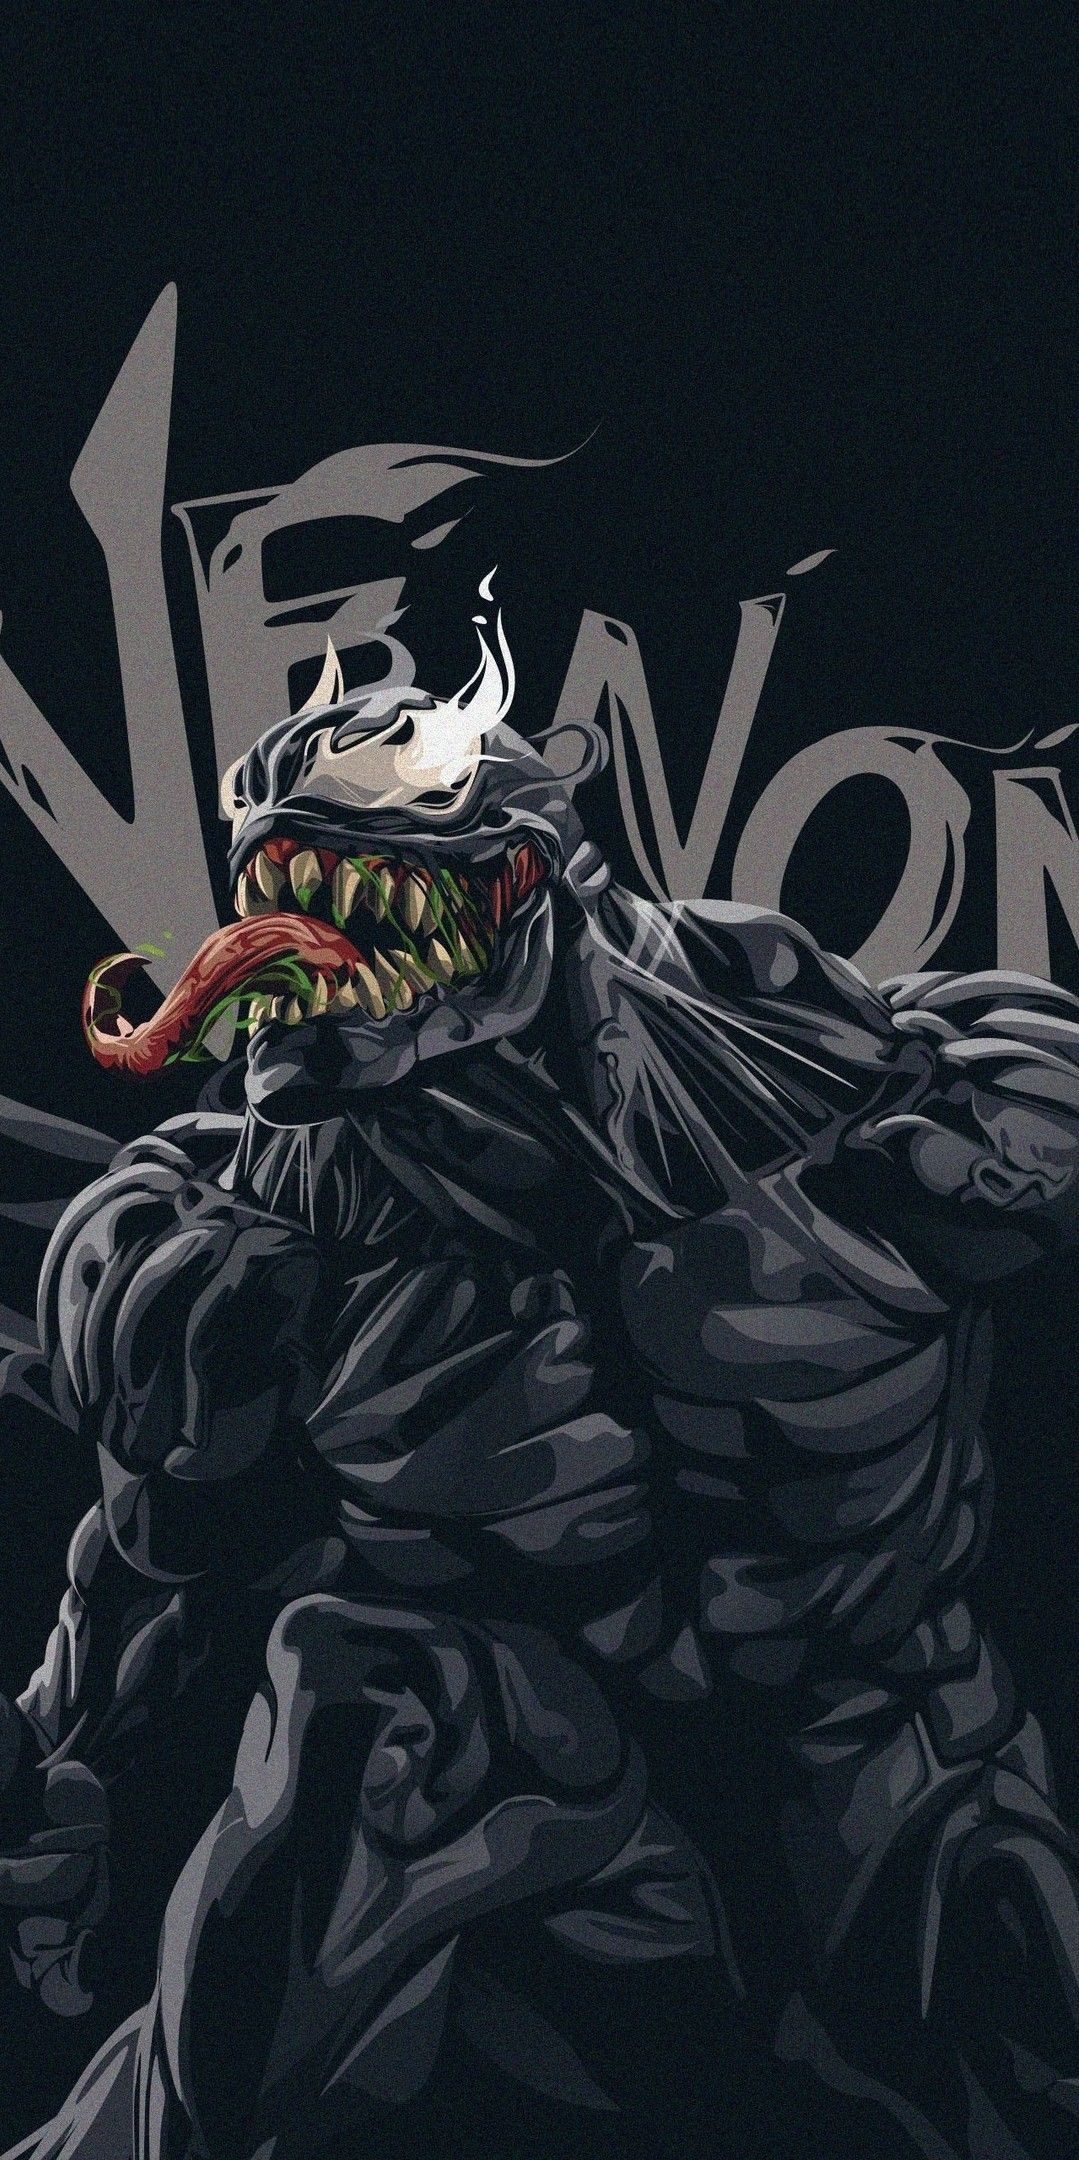 Armaduras. Venom comics, Marvel comics wallpaper, Marvel wallpaper